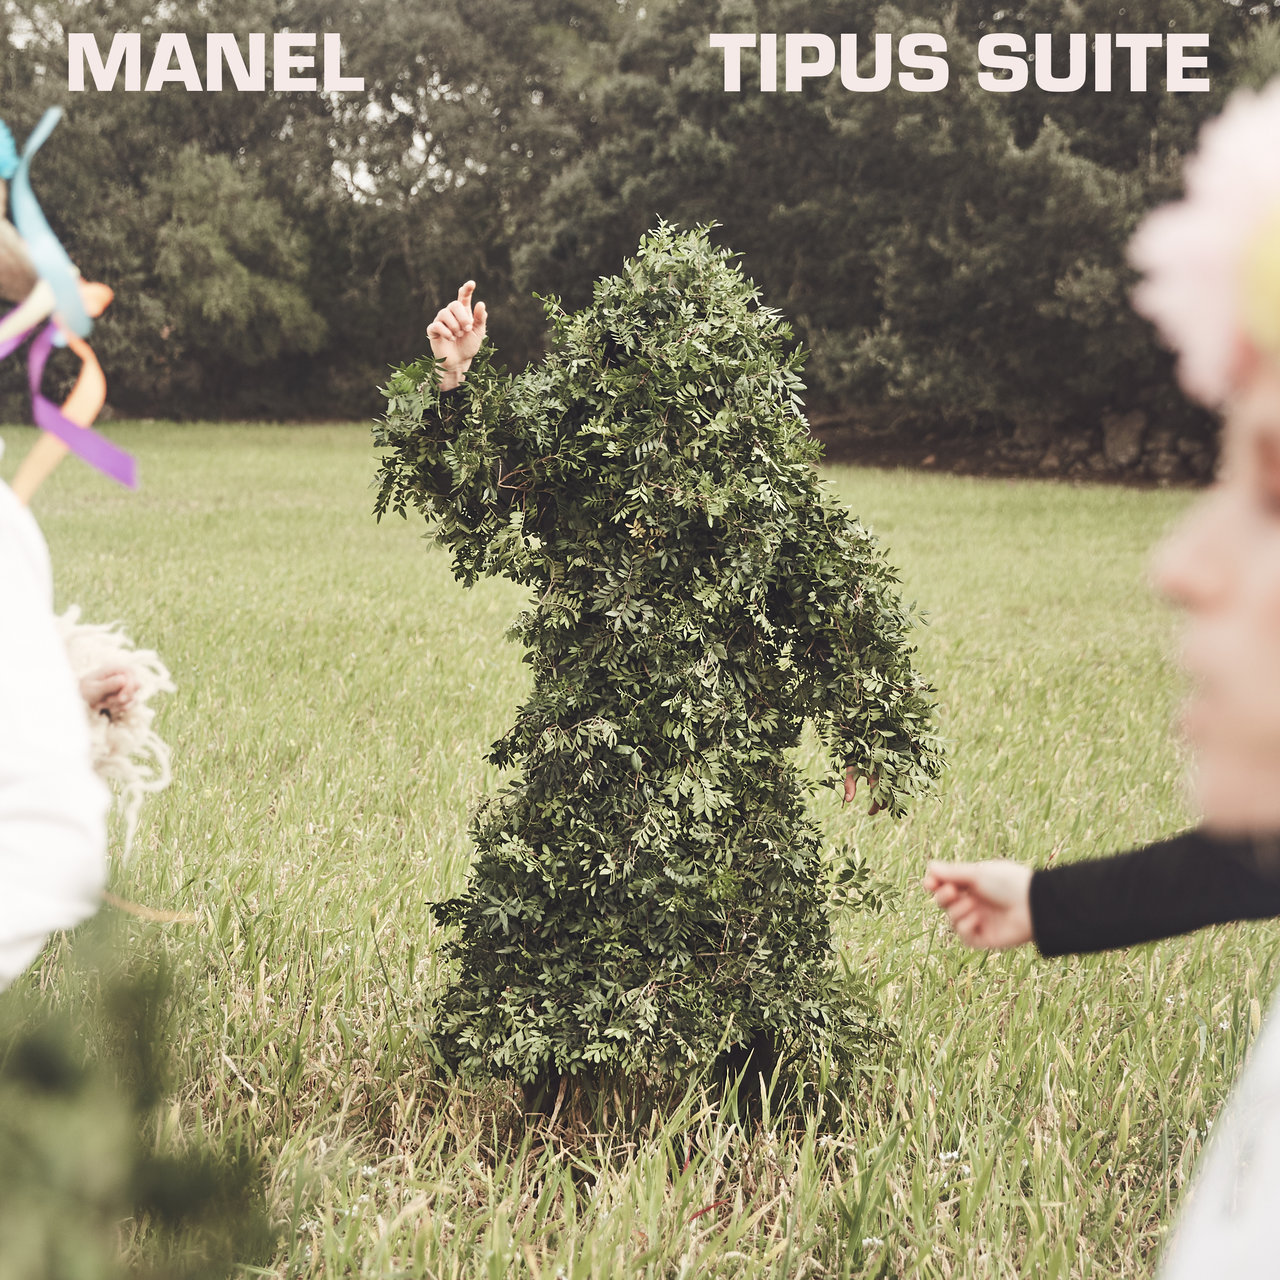 Manel Tipus suite cover artwork